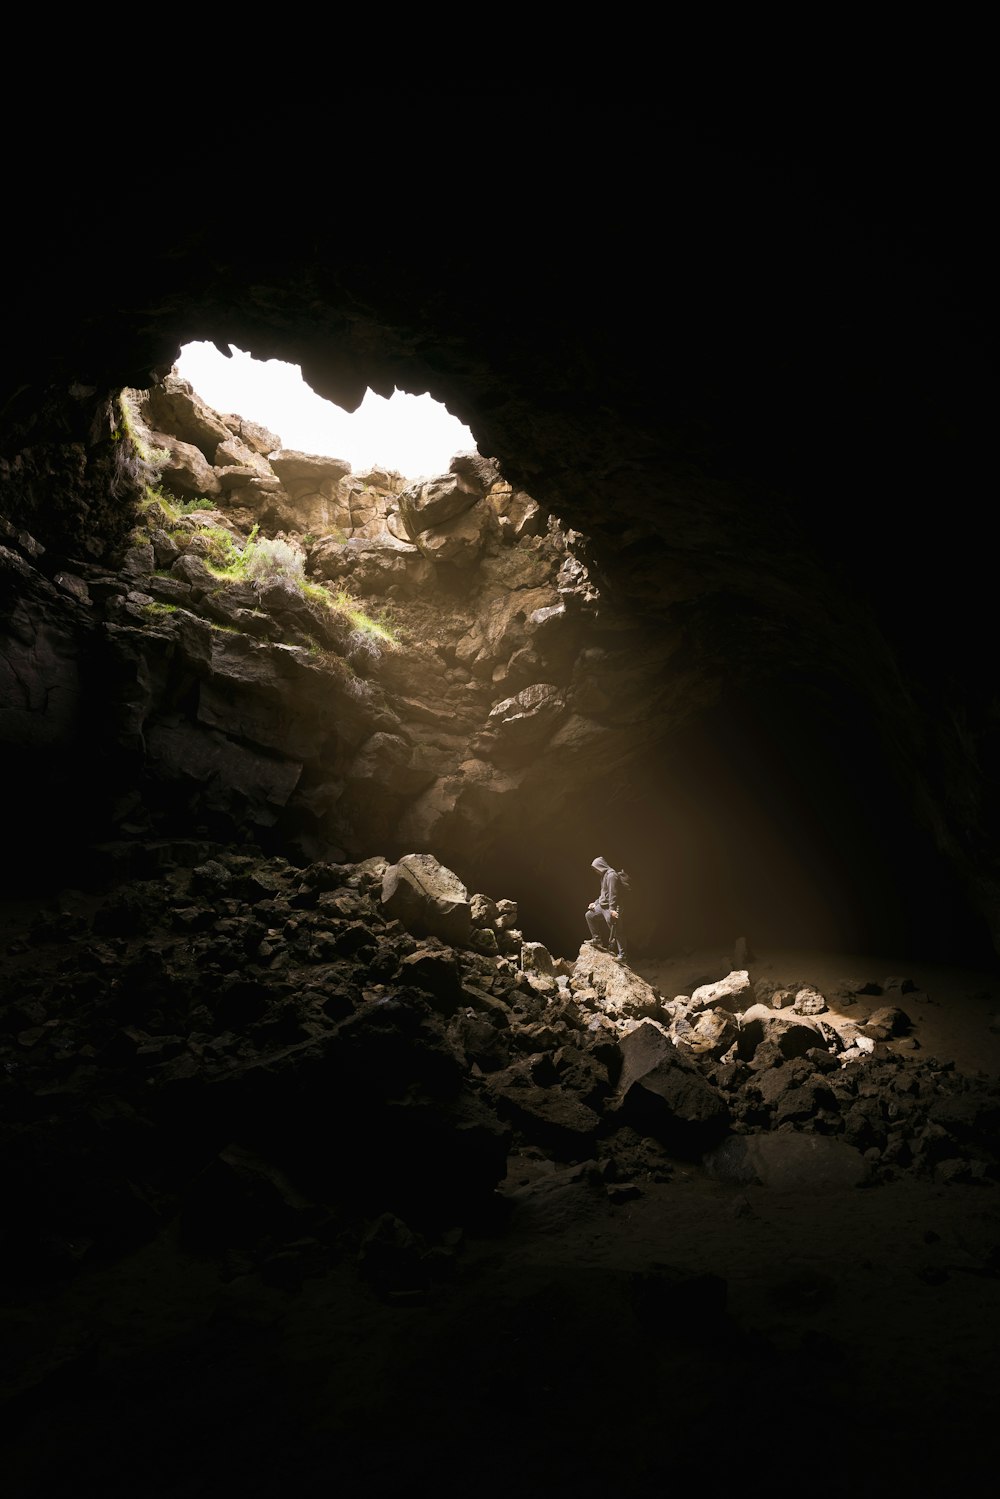 빛이 들어오는 동굴에 서 있는 사람